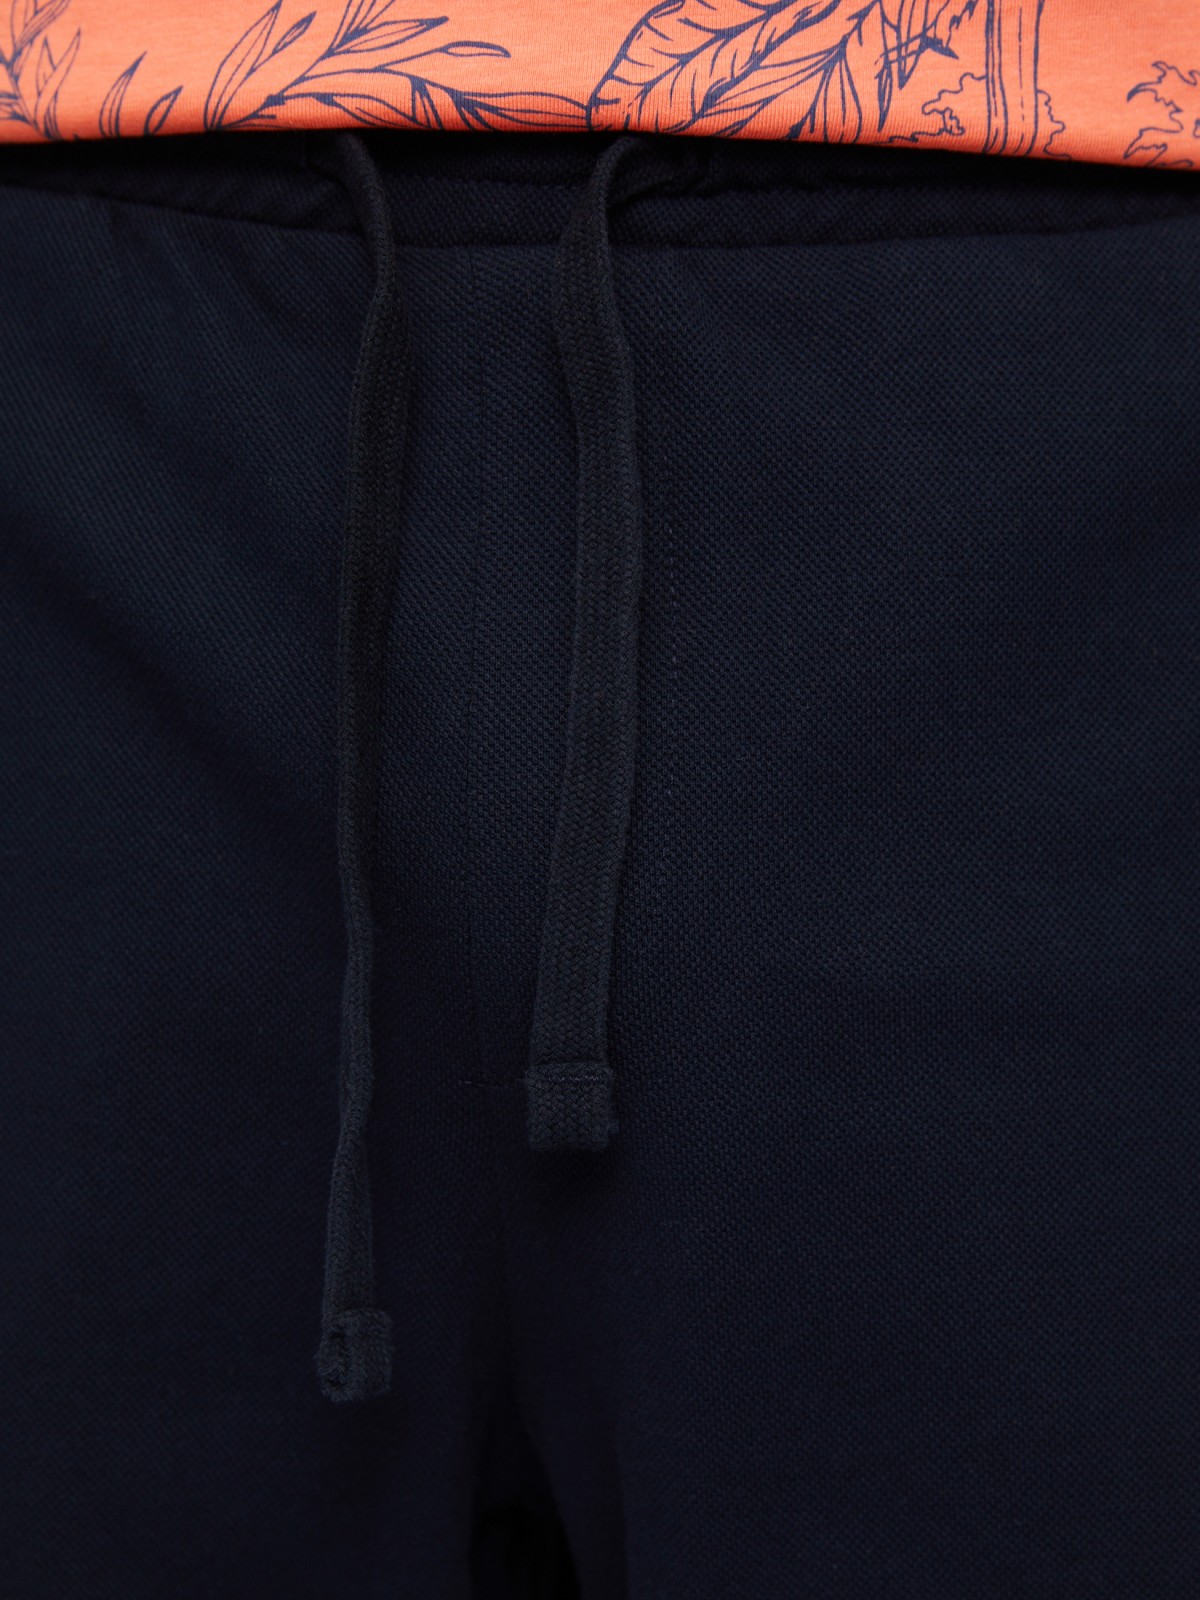 Трикотажные шорты из хлопка zolla 213237J1U012, цвет синий, размер S - фото 3